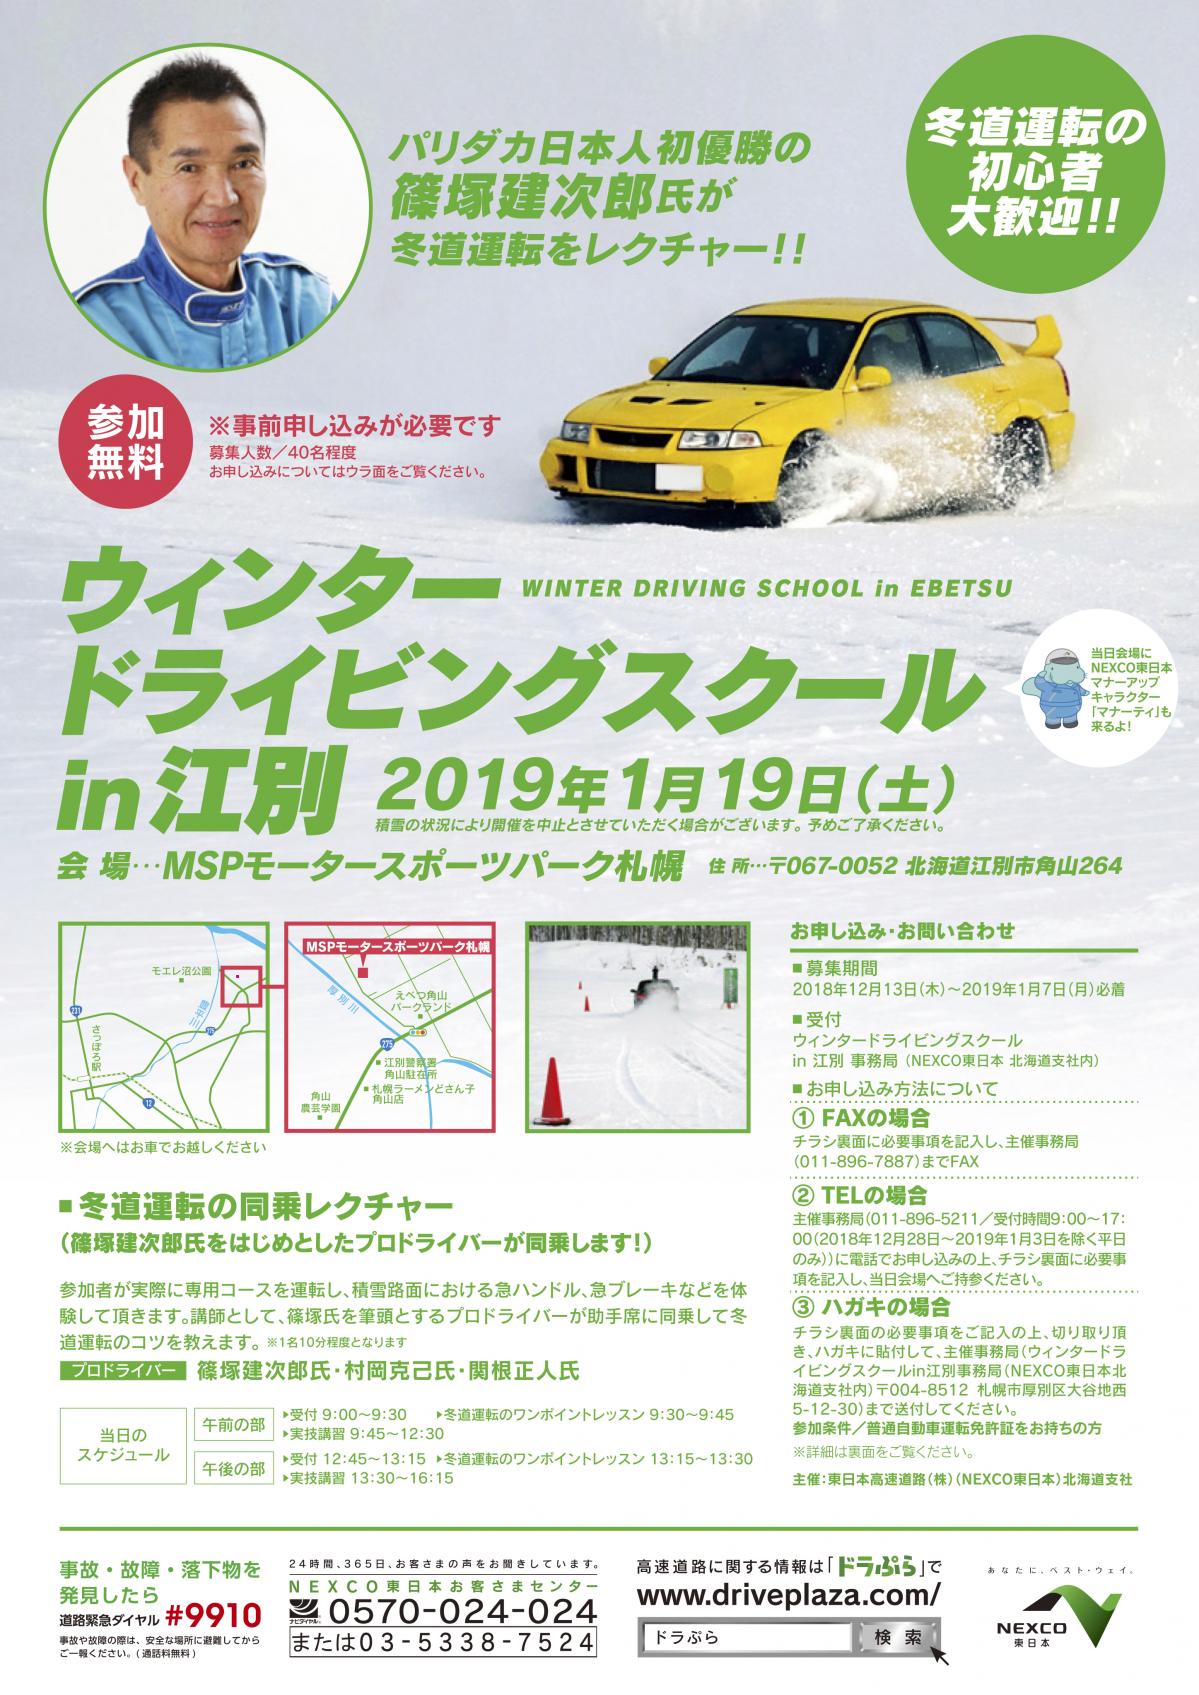 NEXCO東日本 「ウインタードライビングスクール in 江別」を開催